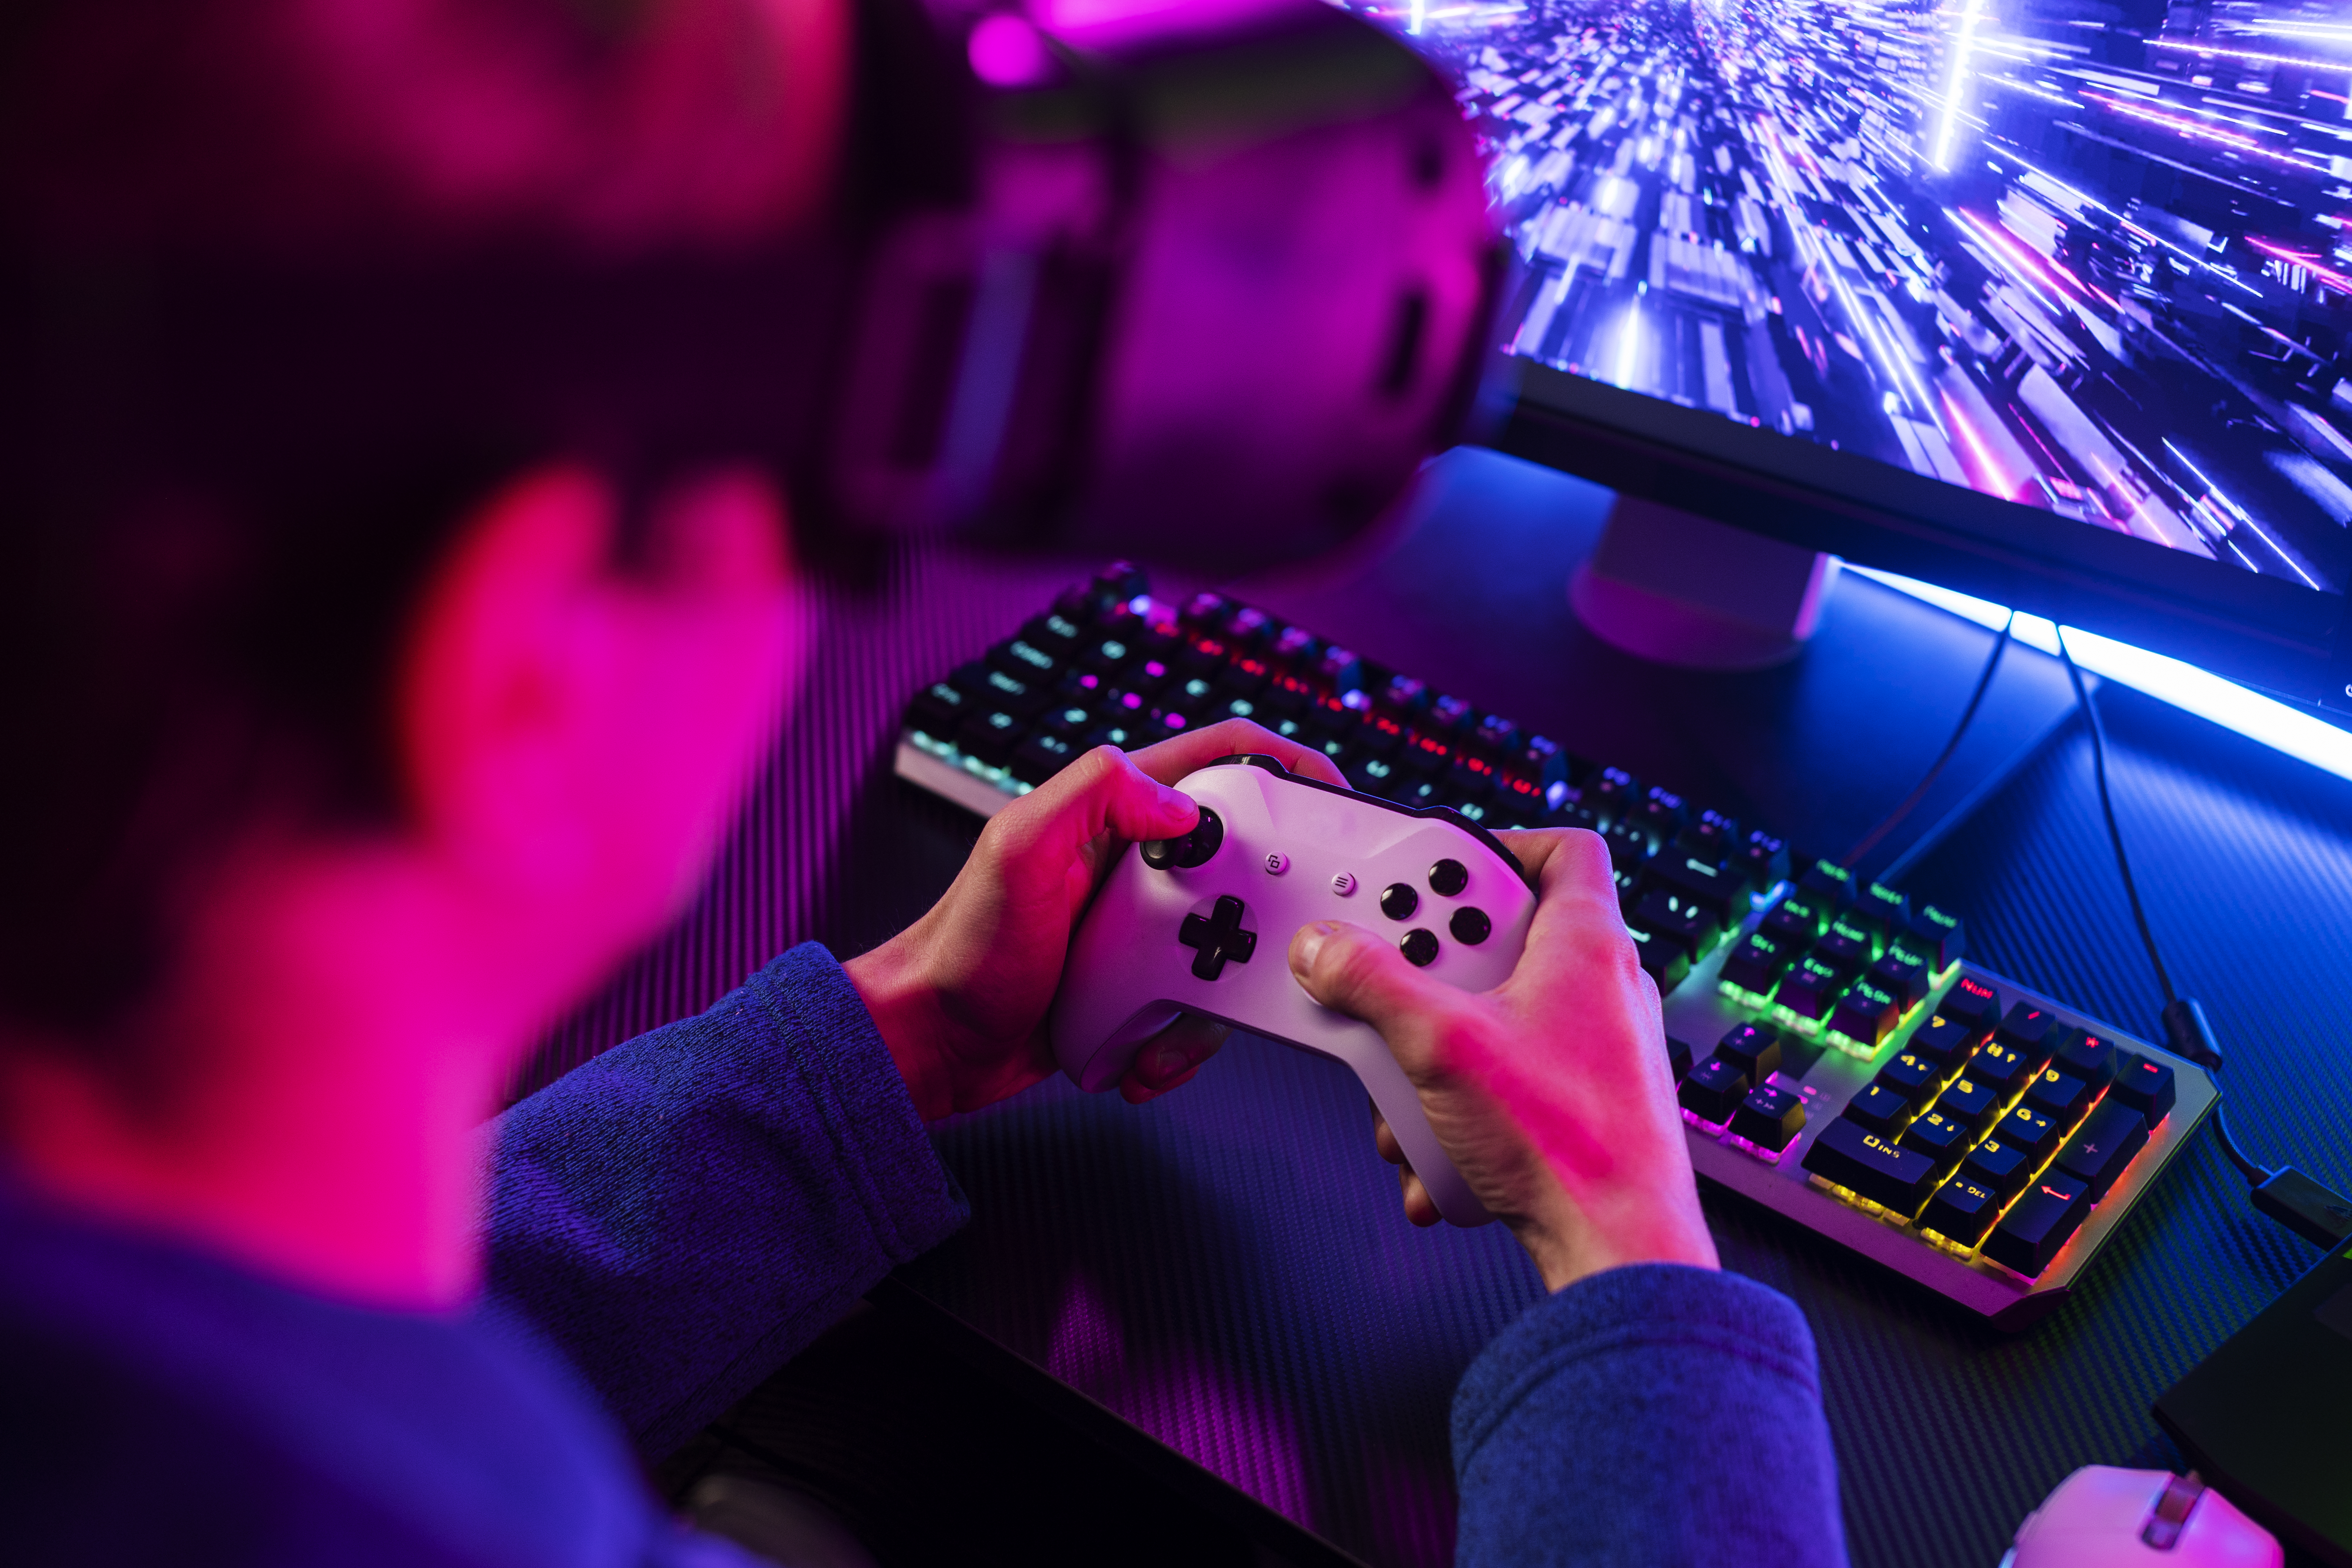 Imagem contendo um rapaz segurando um controle de videogame branco e usando um óculos de realidade virtual, enquanto joga.